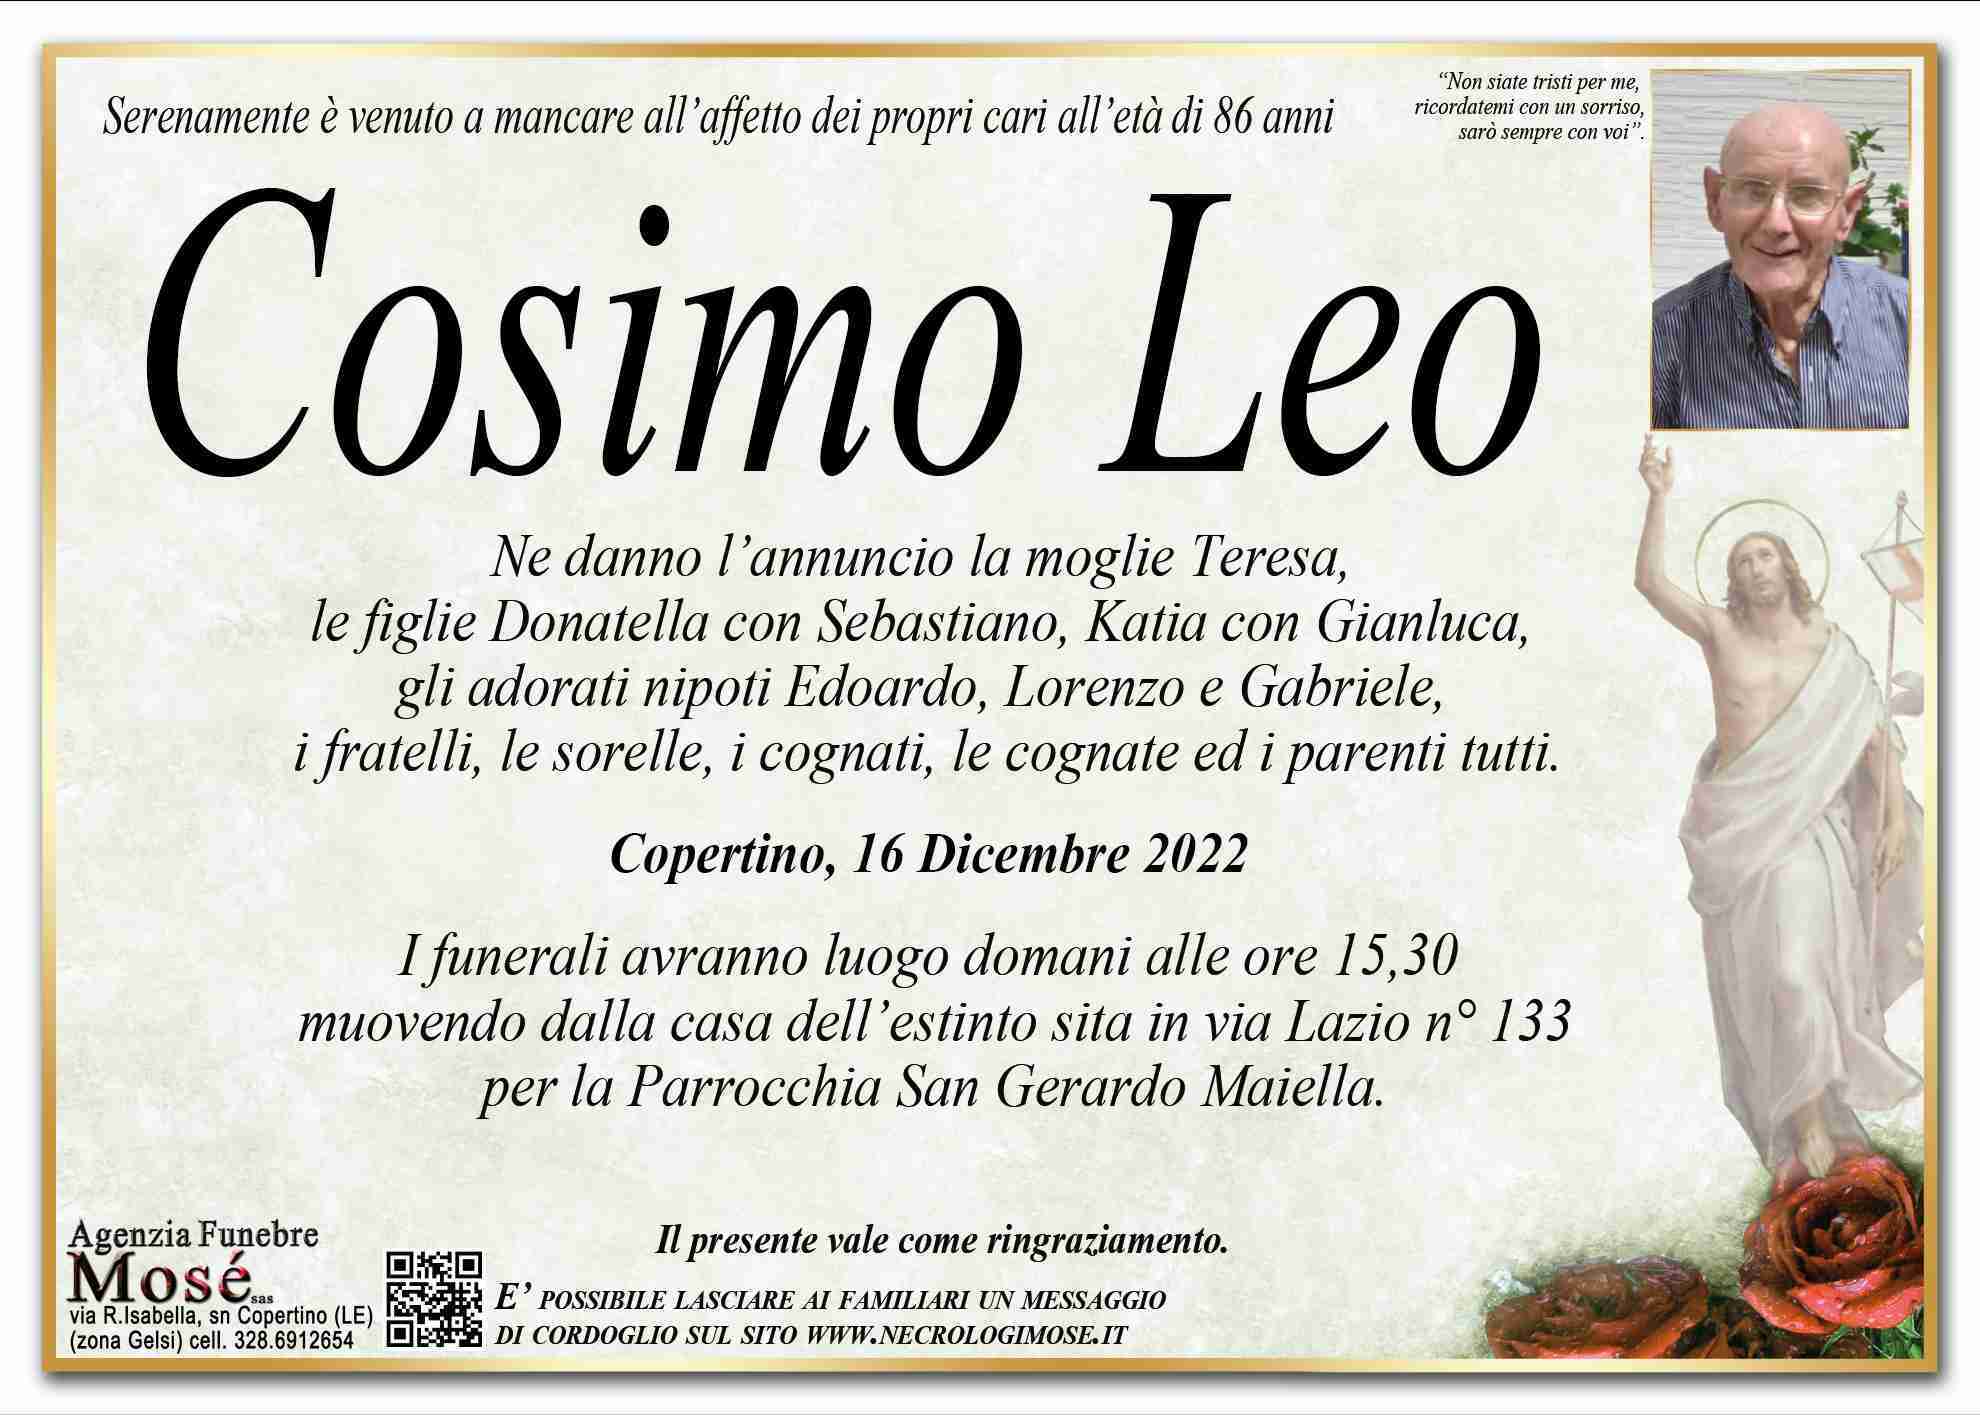 Cosimo Leo